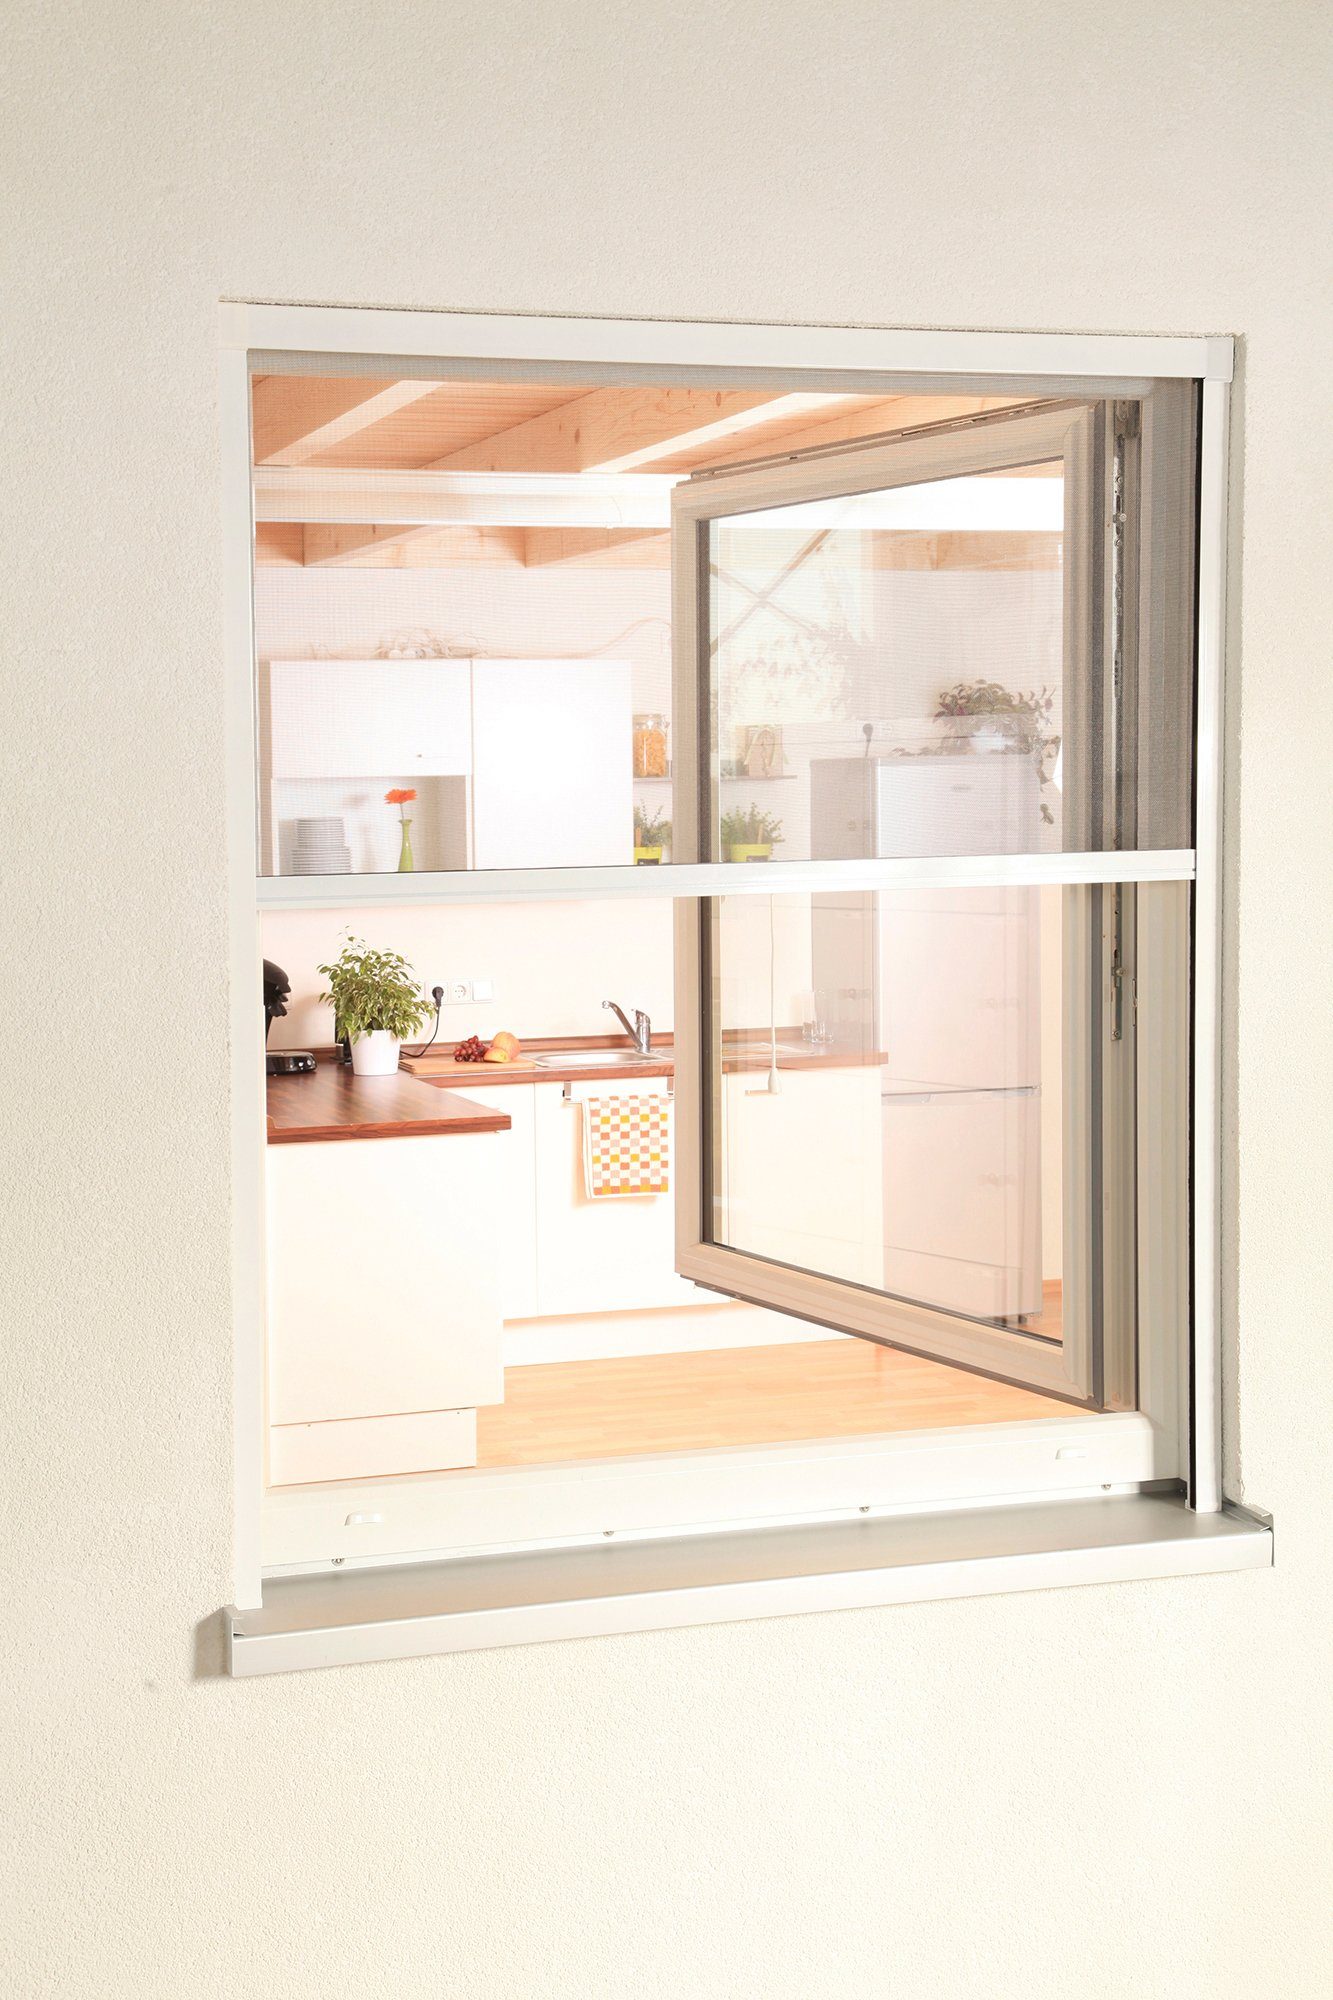 Insektenschutzrollo SMART, hecht international, transparent, verschraubt, für Fenster, weiß/anthrazit, BxH: 160x160 cm